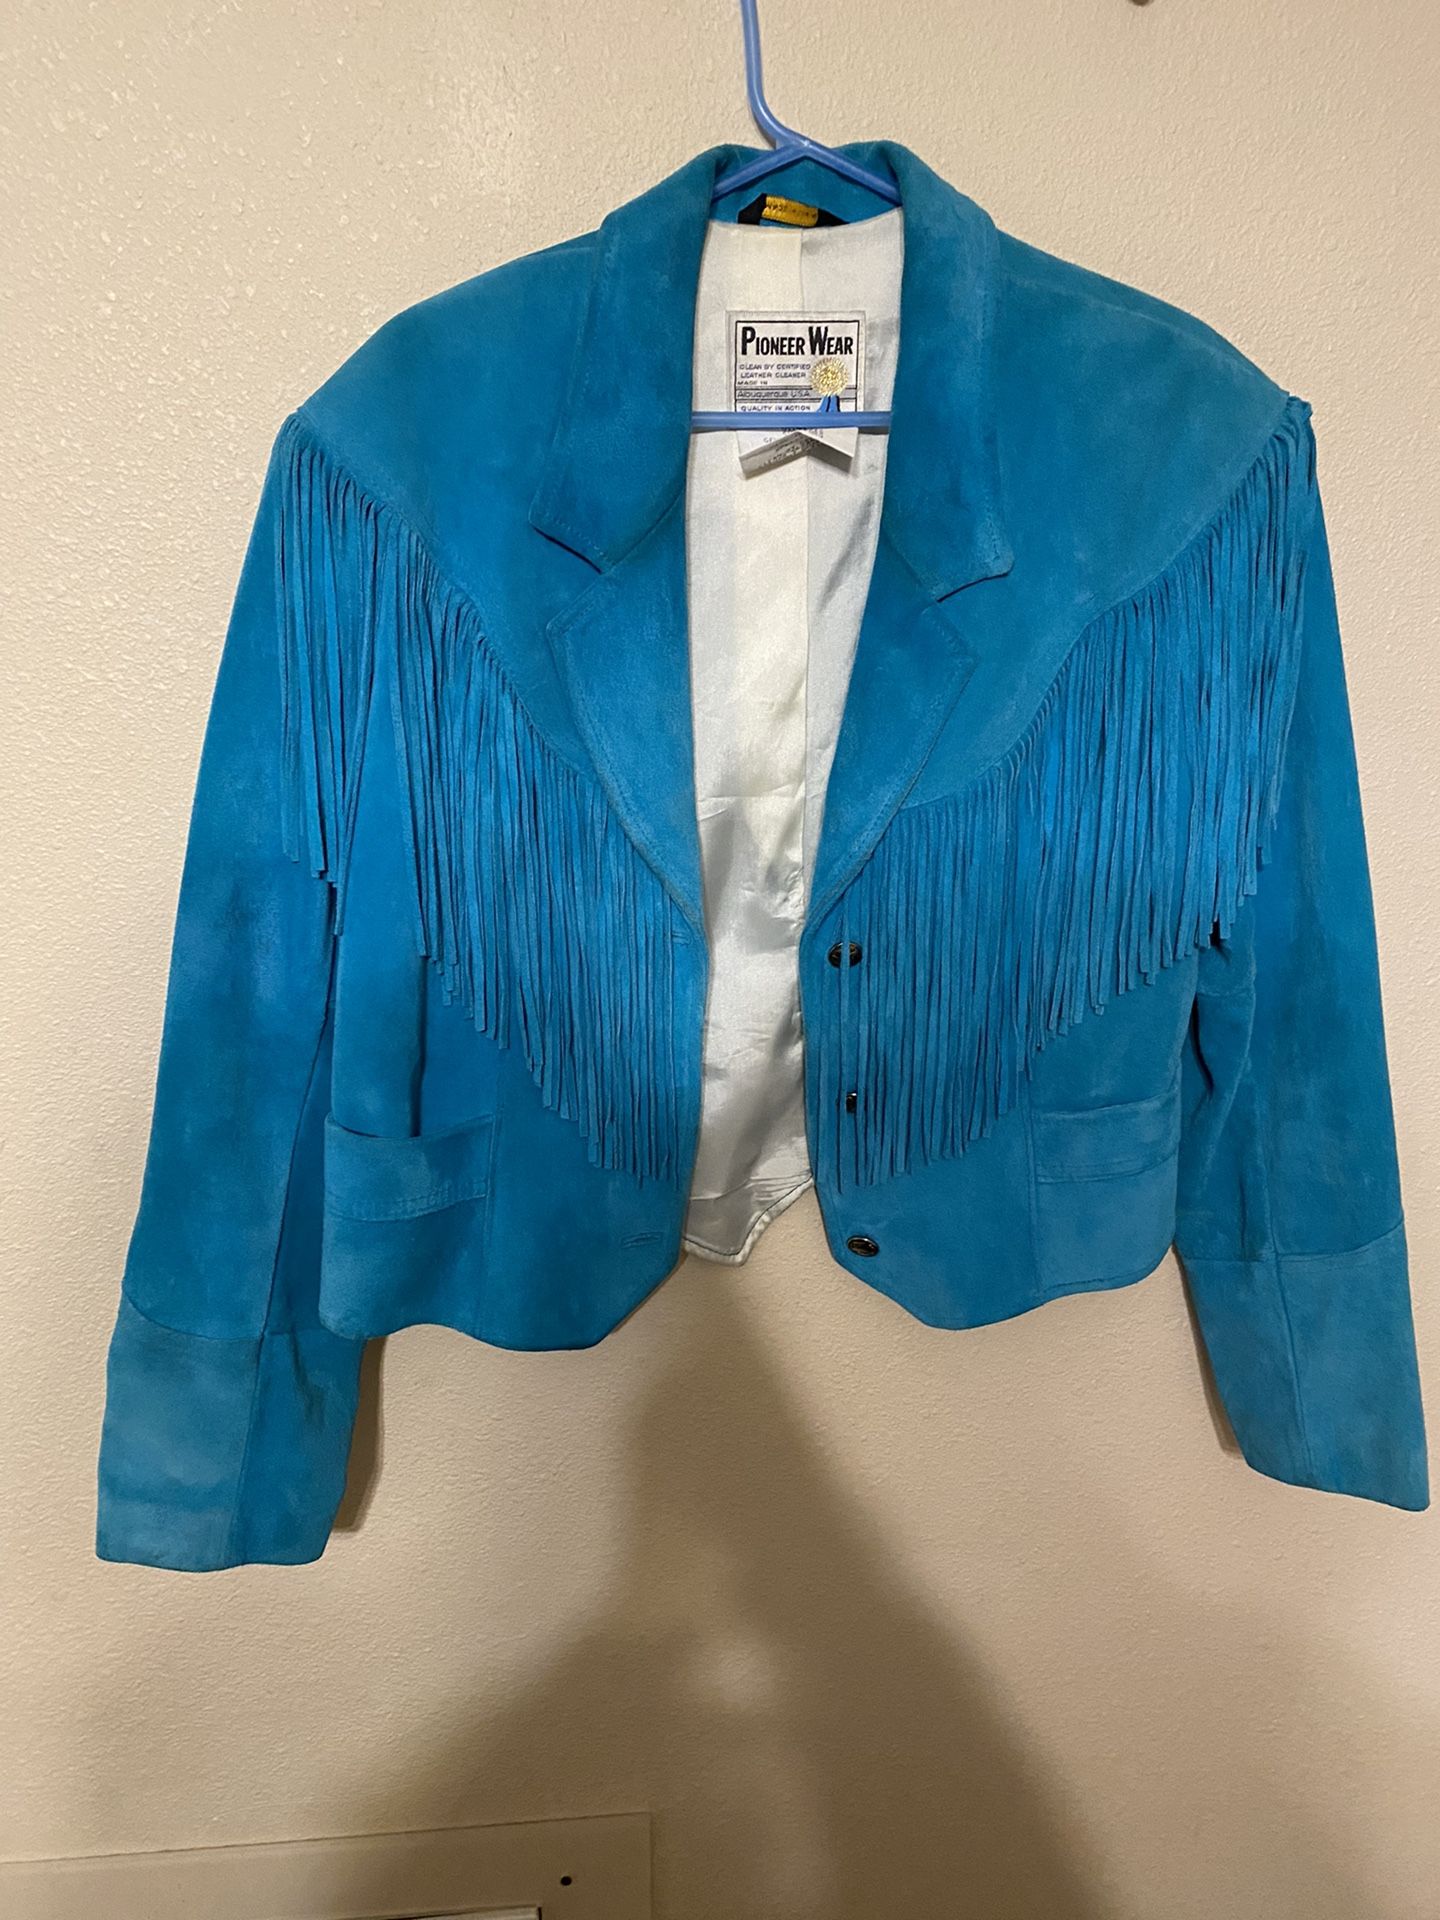 Retro Turquoise Pioneer Wear Fringed Jacket Size 14